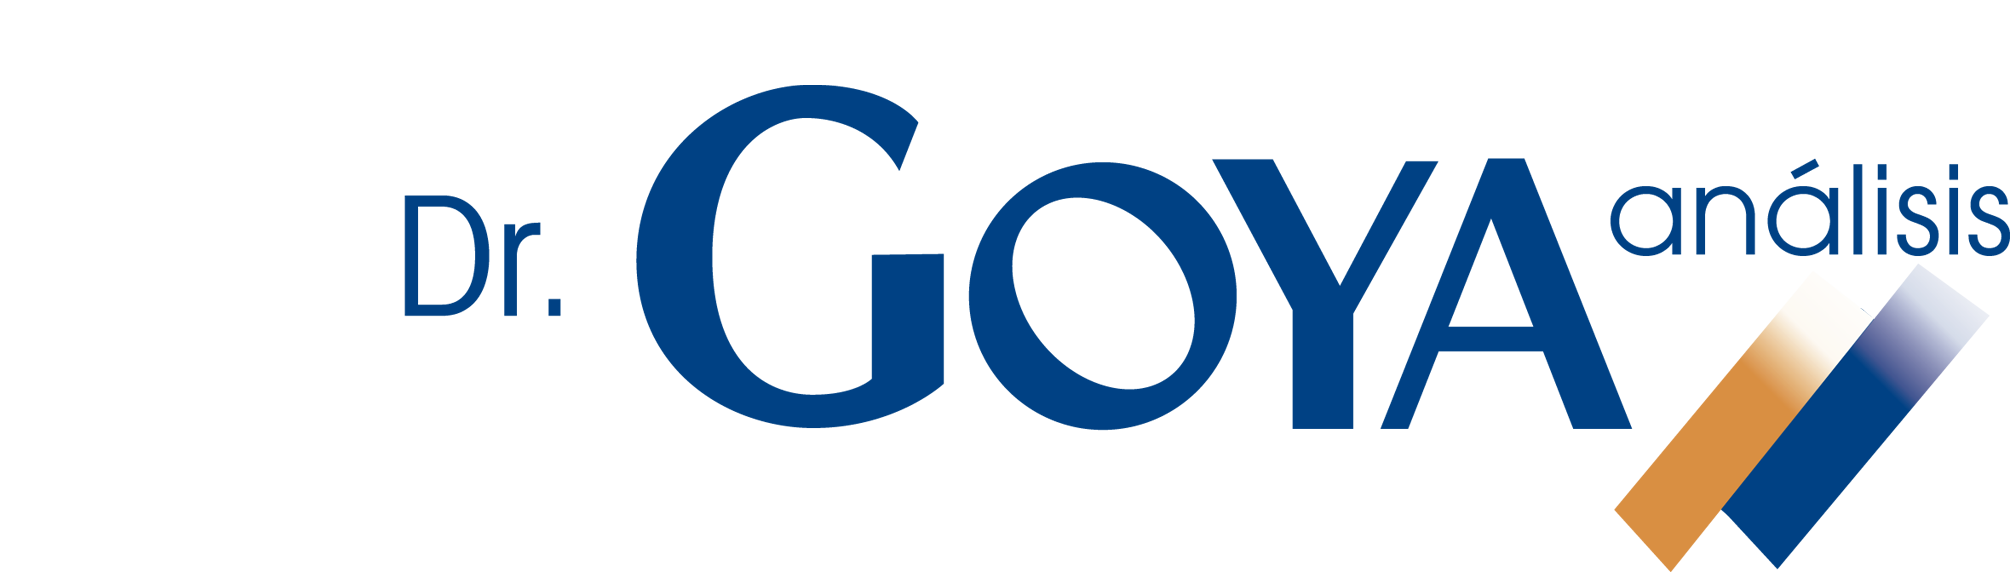 logo-Goya-1